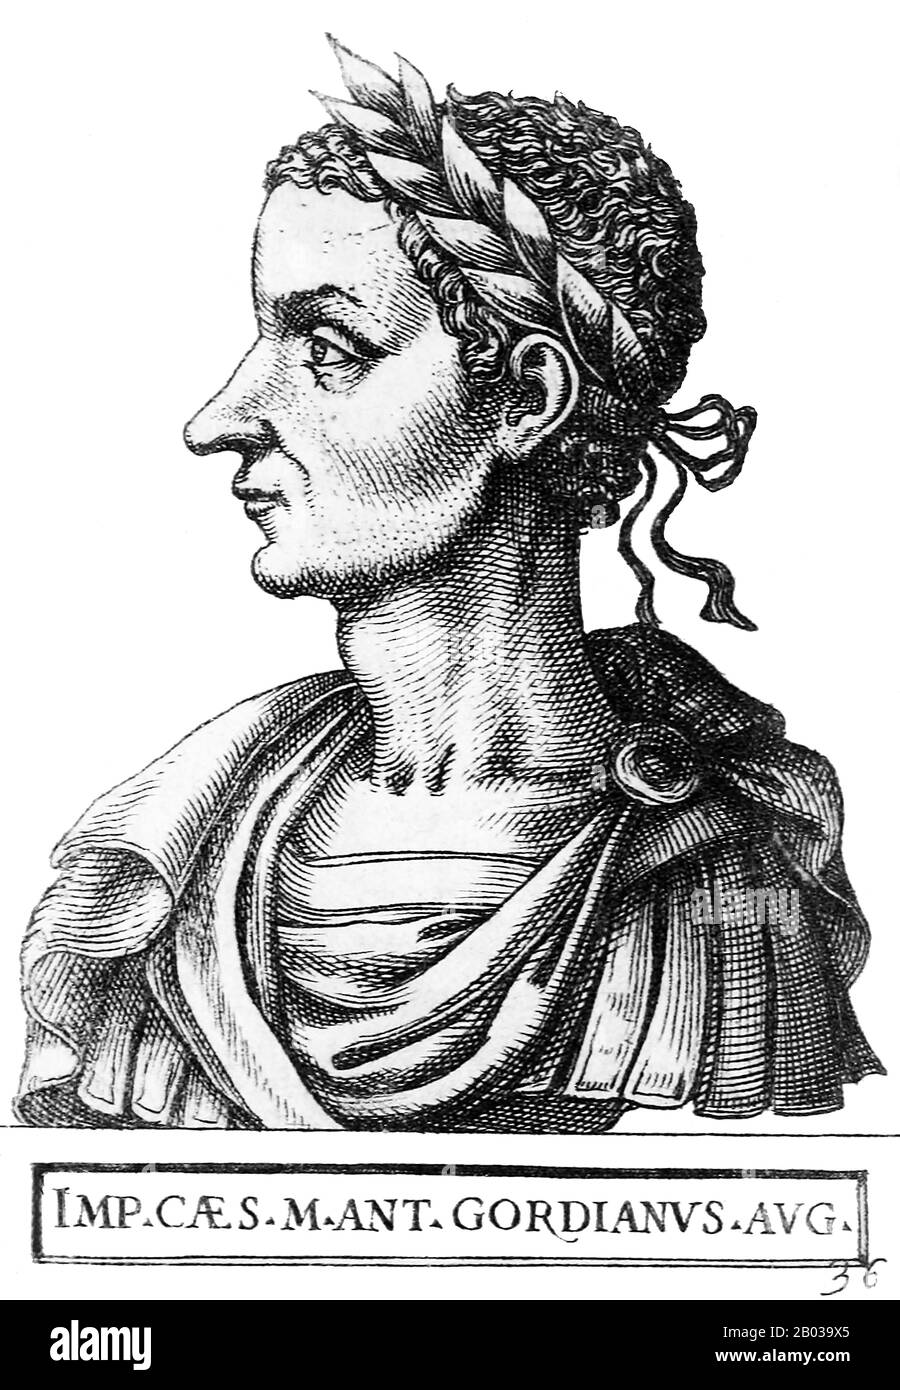 Gordian III (224-244) war der Enkel von Kaiser Gordian I. und Neffe von Kaiser Gordian II Über sein frühes Leben ist wenig bekannt, doch kurz nach dem Tod Gordians I. und Gordians II. Im Jahr 238 wurde Gordian III. Als sein Großvater in Marcus Antonio Gordianus umbenannt und wurde Kaisererbe. Als die derzeitigen Mitkaiser Pupienus und Balbinus Monate nach ihrem Beitritt von der Prätorianischen Garde hingerichtet wurden, wurde Gordian im Alter von 13 Jahren Kaiser, der jüngste alleiniger juristischer römischer Kaiser während der gesamten Existenz des einheitlichen römischen Imperiums. Aufgrund seines Alters wurde das Urteil Roms tatsächlich b Stockfoto